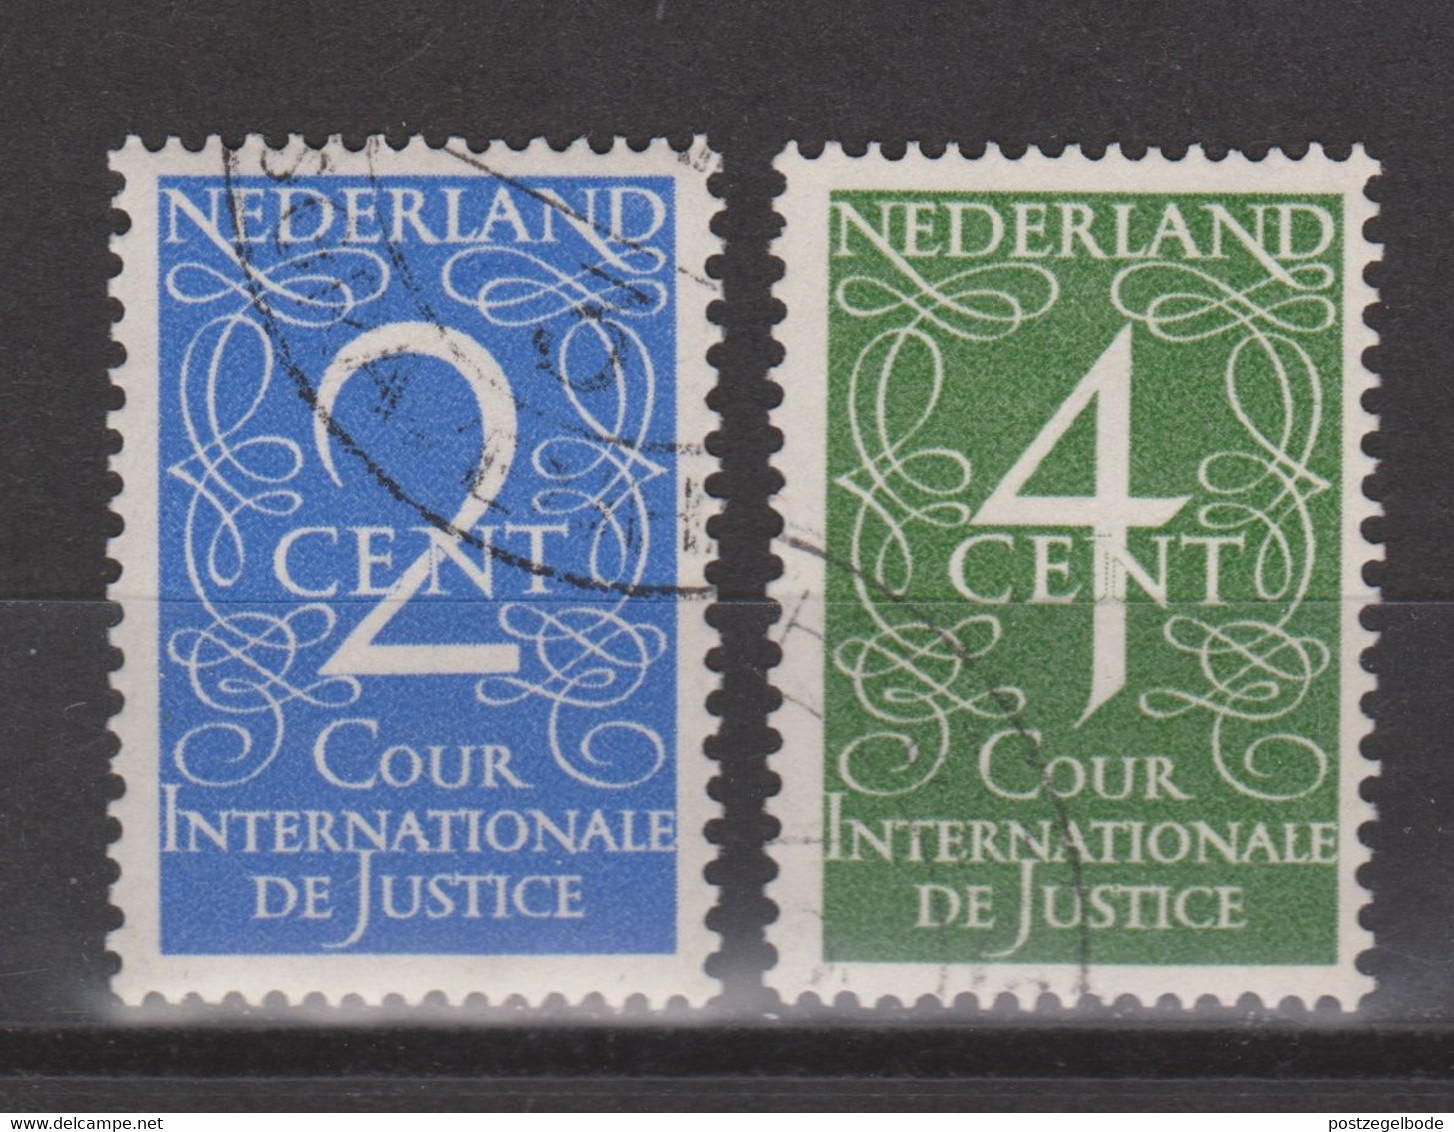 NVPH Nederland Netherlands Pays Bas Niederlande Holanda 25-26 Used Dienst Zegel Service Stamp Timbre Cour Sello Oficio - Dienstmarken